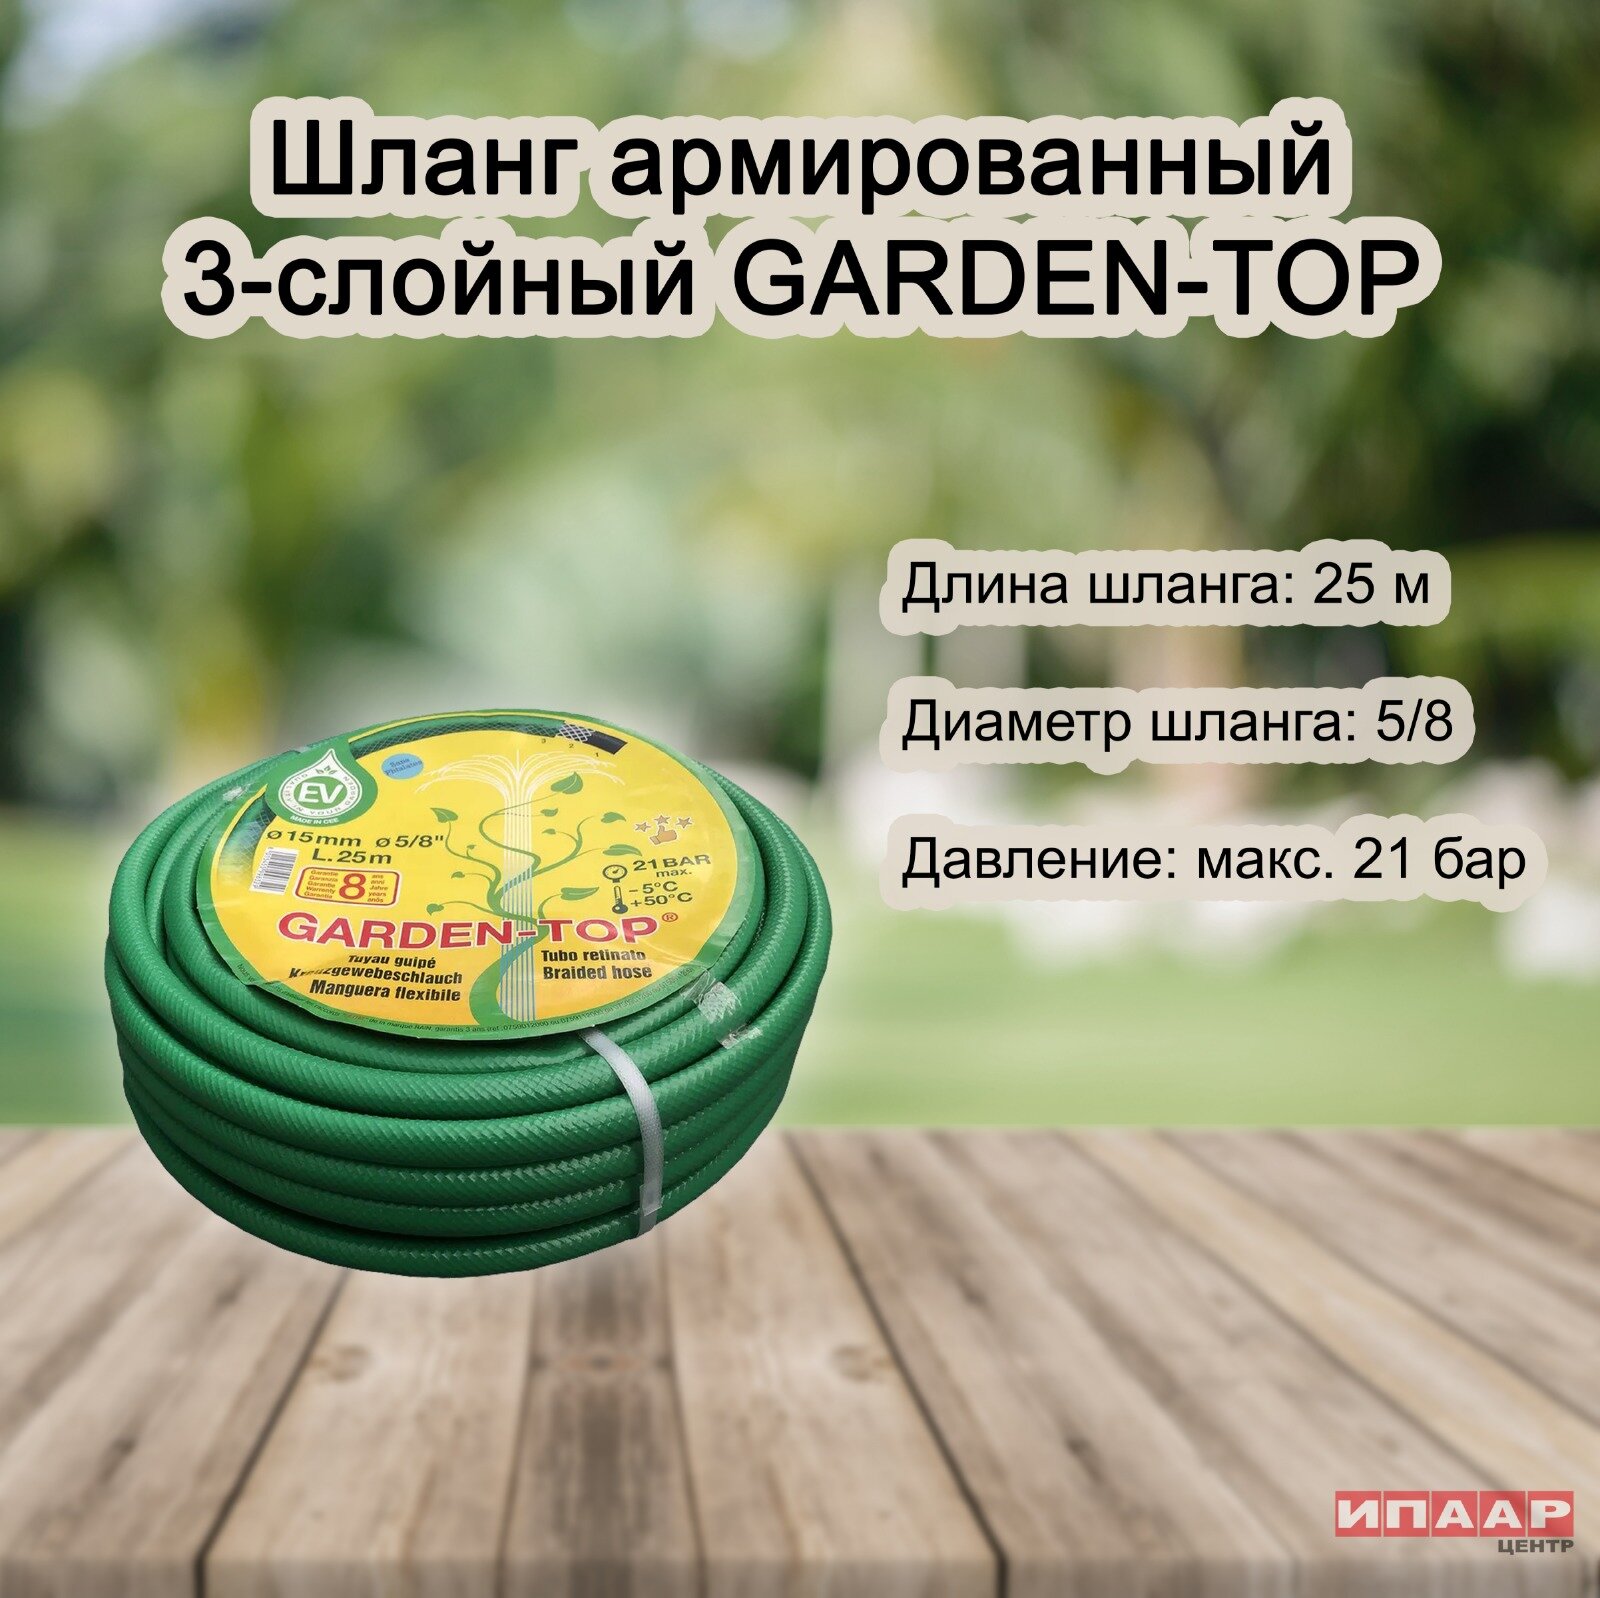 Шланг армированный 3-слойный GARDEN-TOP зеленый, ⅝", 25 м (RAIN)